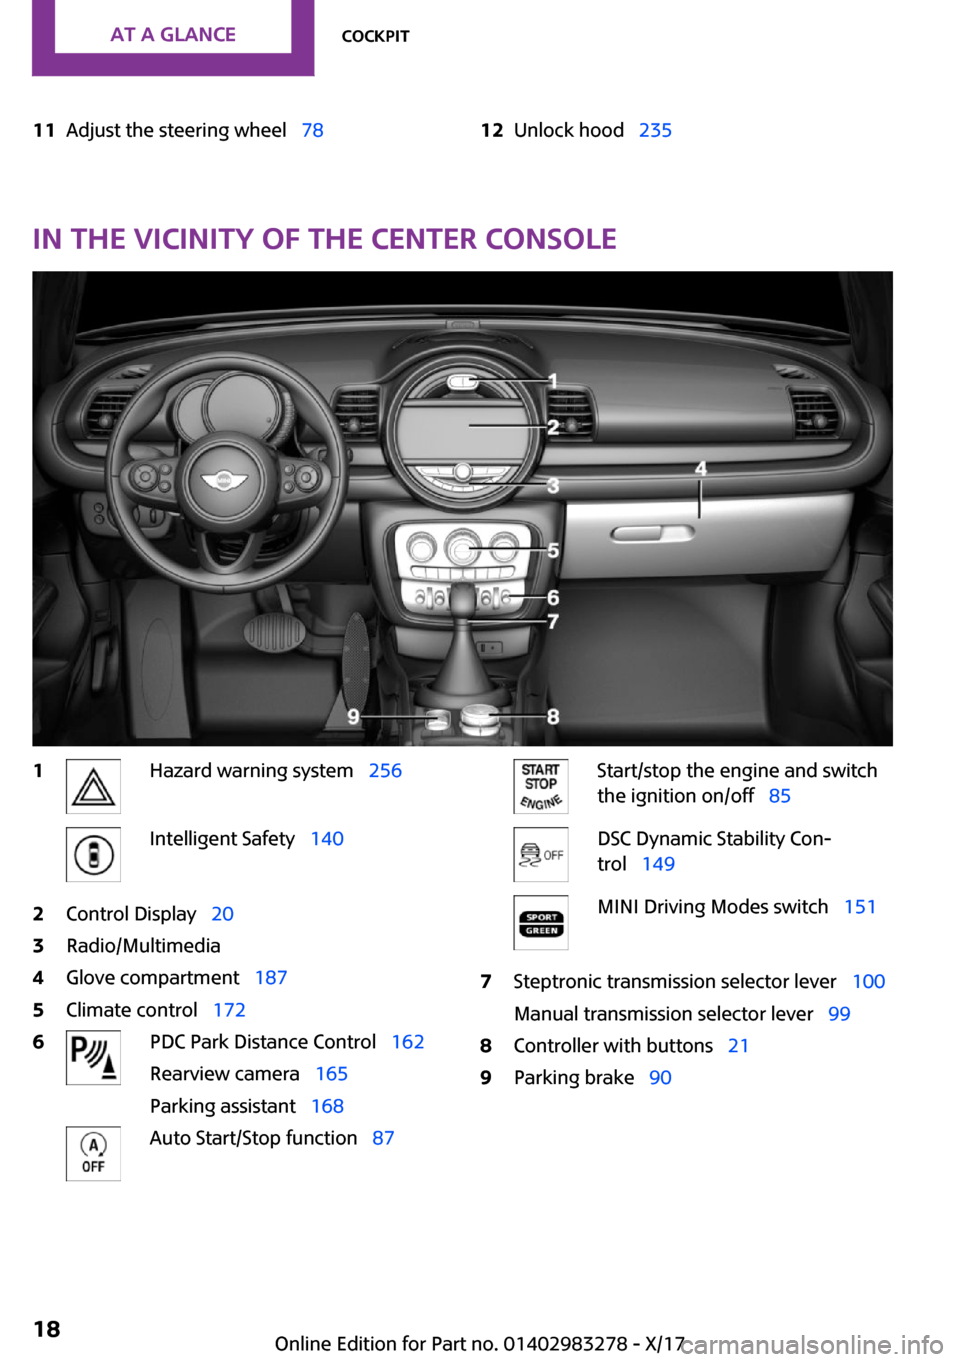 MINI Clubman 2018 User Guide �1�1�A�d�j�u�s�t� �t�h�e� �s�t�e�e�r�i�n�g� �w�h�e�e�lps�7�8�1�2�U�n�l�o�c�k� �h�o�o�dps�2�3�5
�I�n��t�h�e��v�i�c�i�n�i�t�y��o�f��t�h�e��c�e�n�t�e�r��c�o�n�s�o�l�e
�1�H�a�z�a�r�d� �w�a�r�n�i